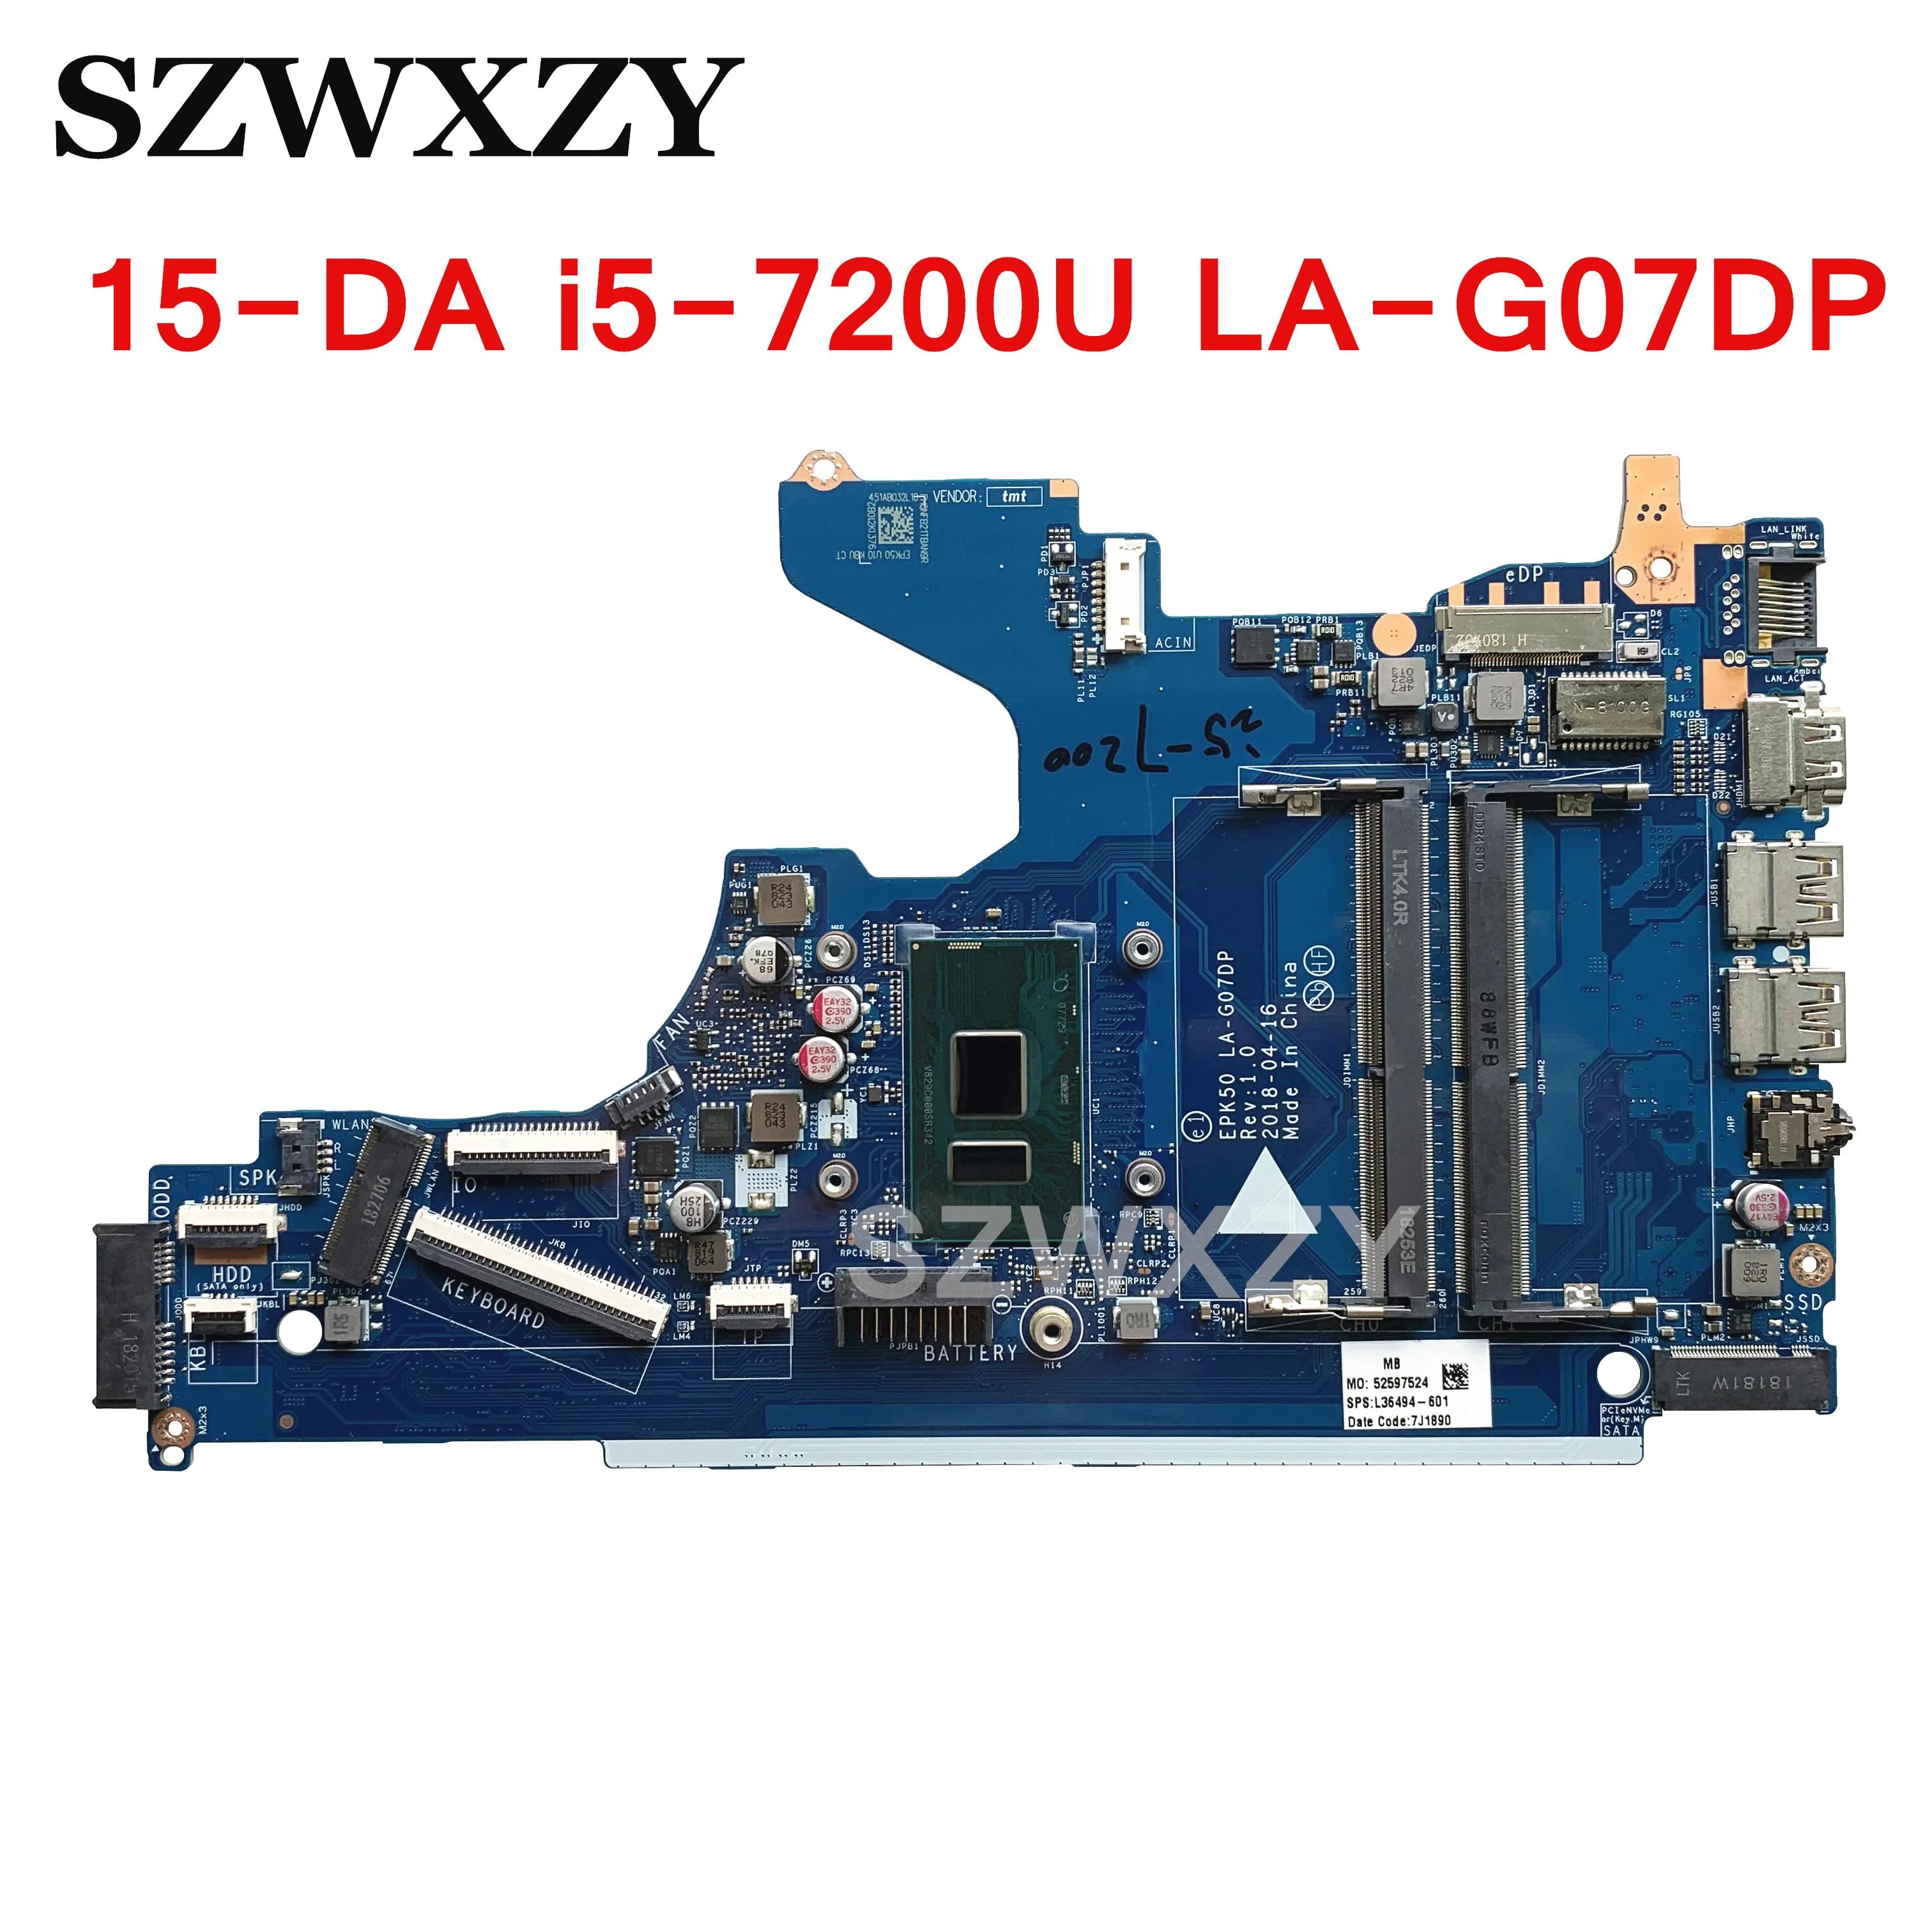  HP 15-DA Ʈ  L36494-001 L36494-601 LA-G07DP, i5-7200U CPU 